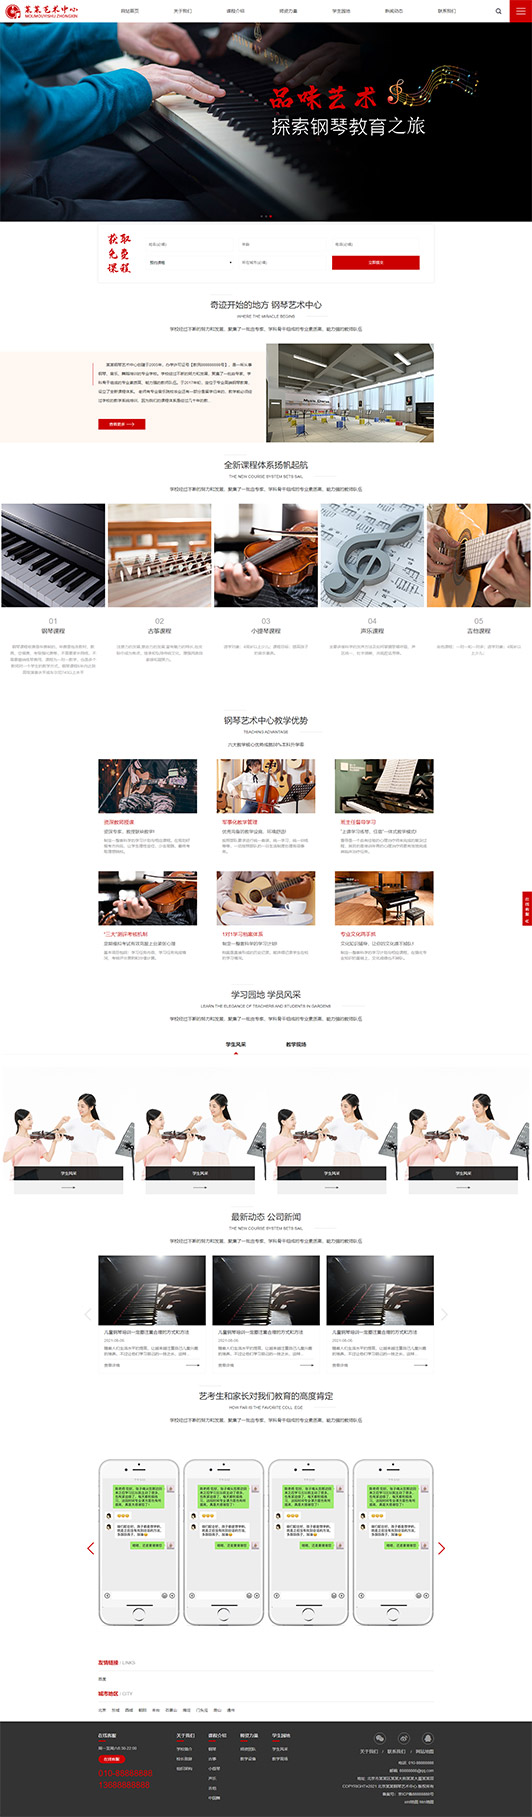 白城钢琴艺术培训公司响应式企业网站